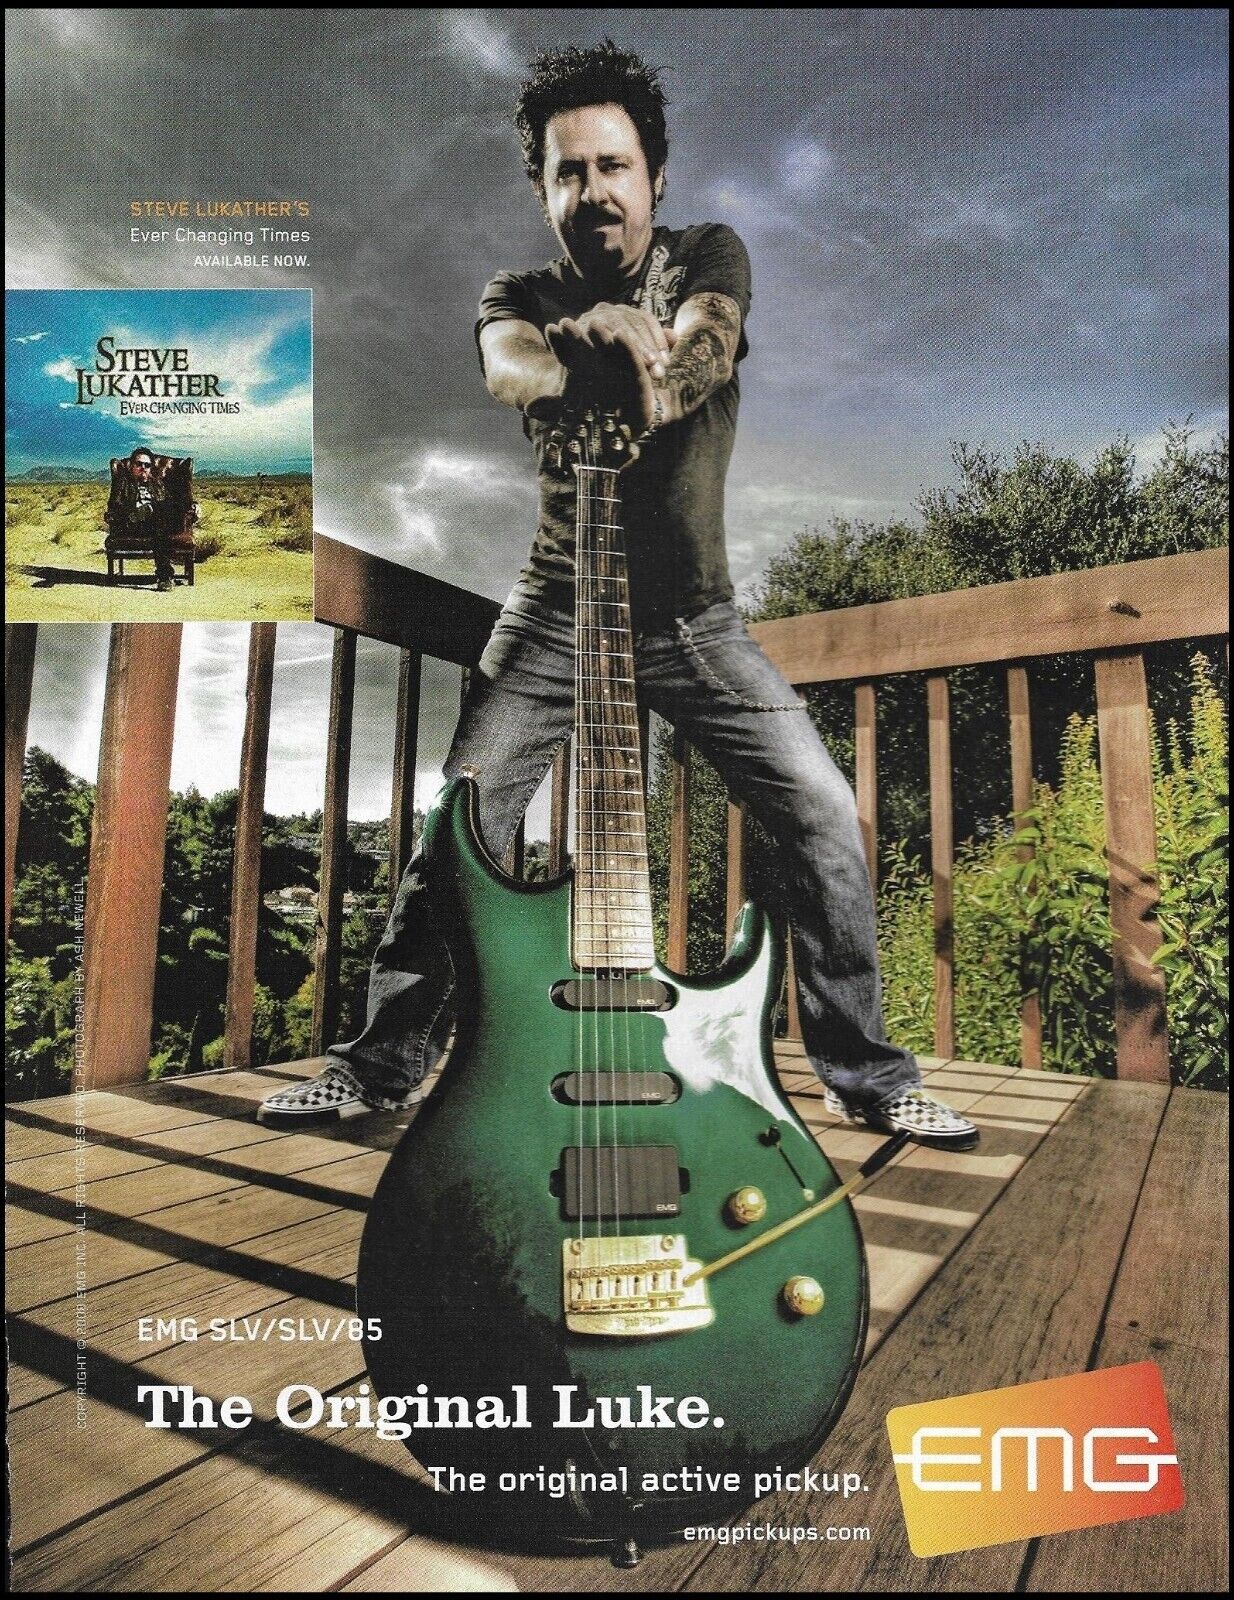 Steve Lukather 2009 EMG SLV pickups on Ernie Ball Music Man guitar advertisement